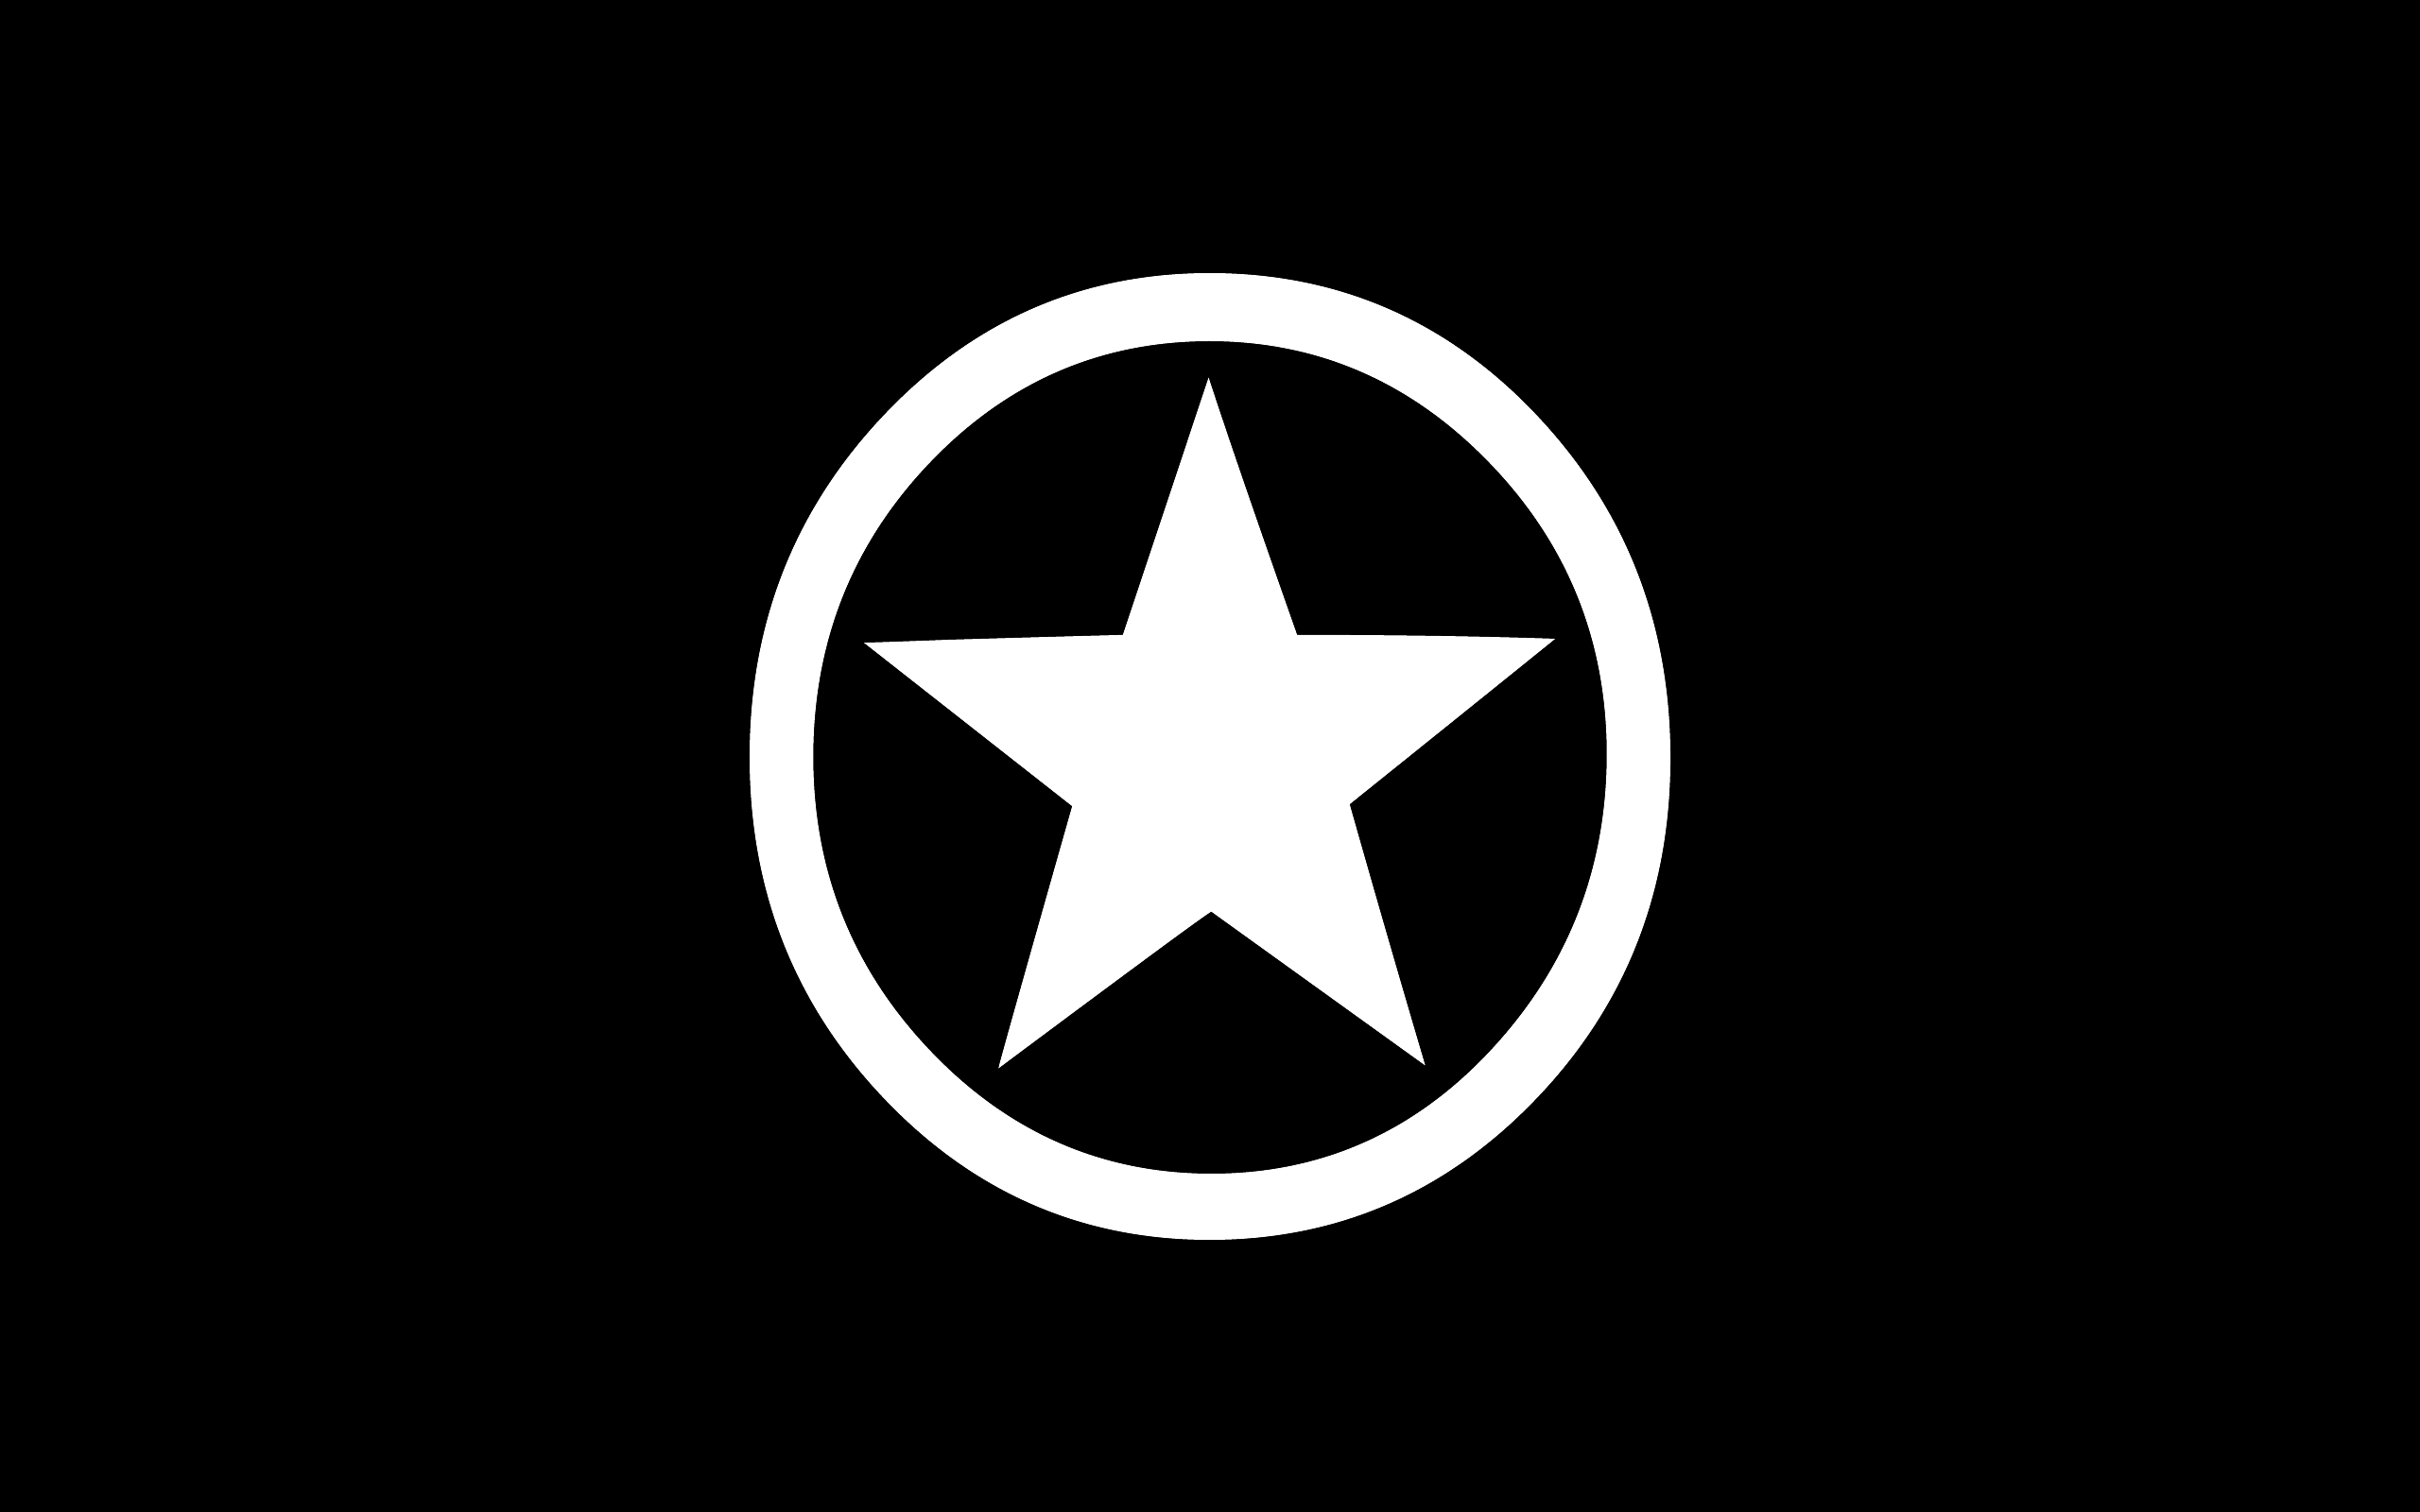 All Star - Converse Wallpaper (27632783) - Fanpop